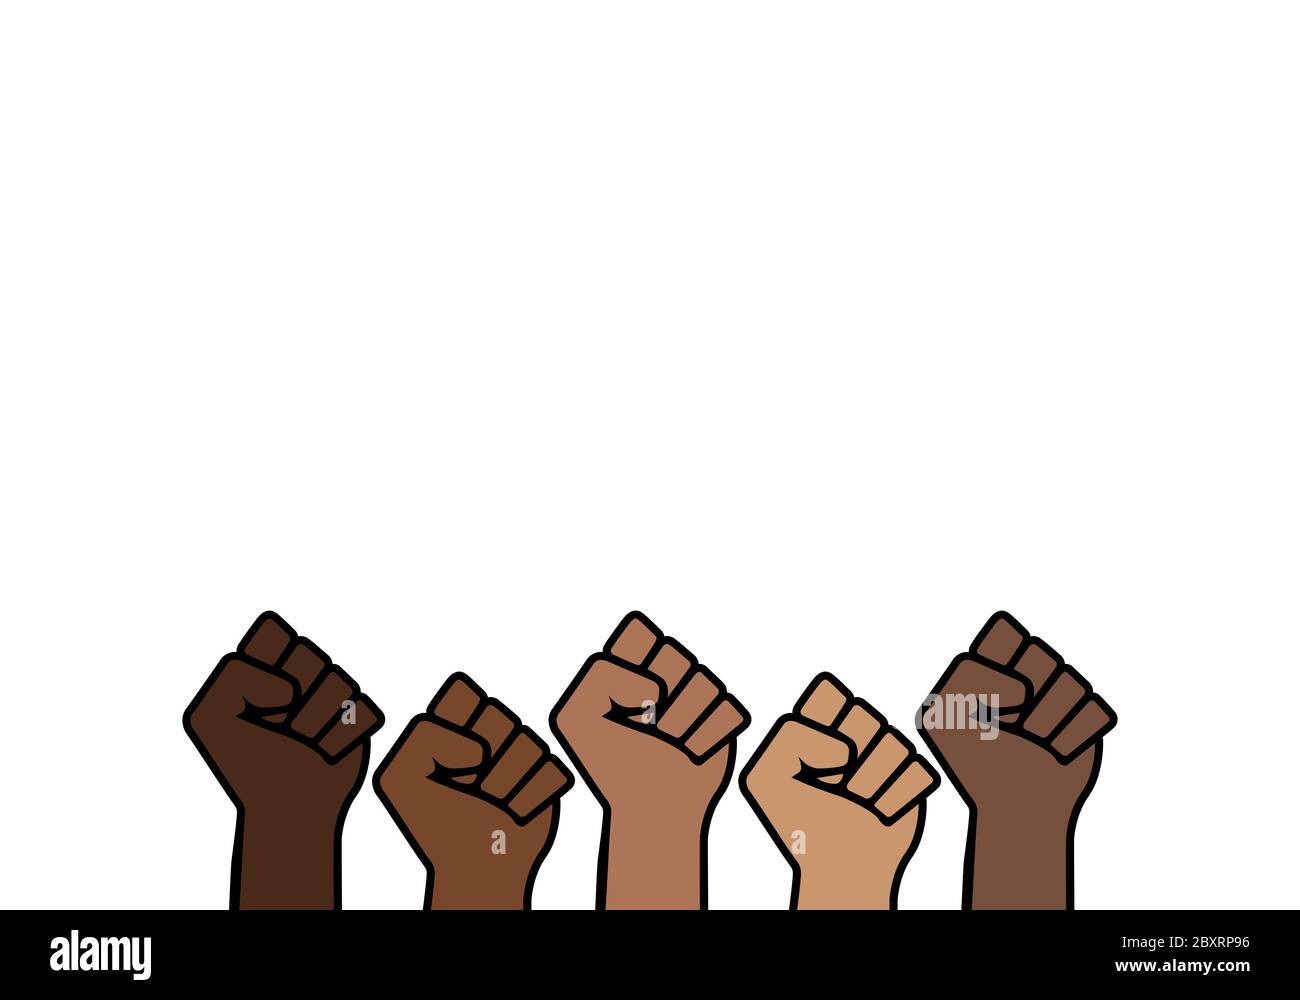 Les vies noires comptent de fiers Fists, fierté de l'histoire noire, espace de copie fond blanc, préjugés discrimination militantisme illustration bannière, african ameri Banque D'Images